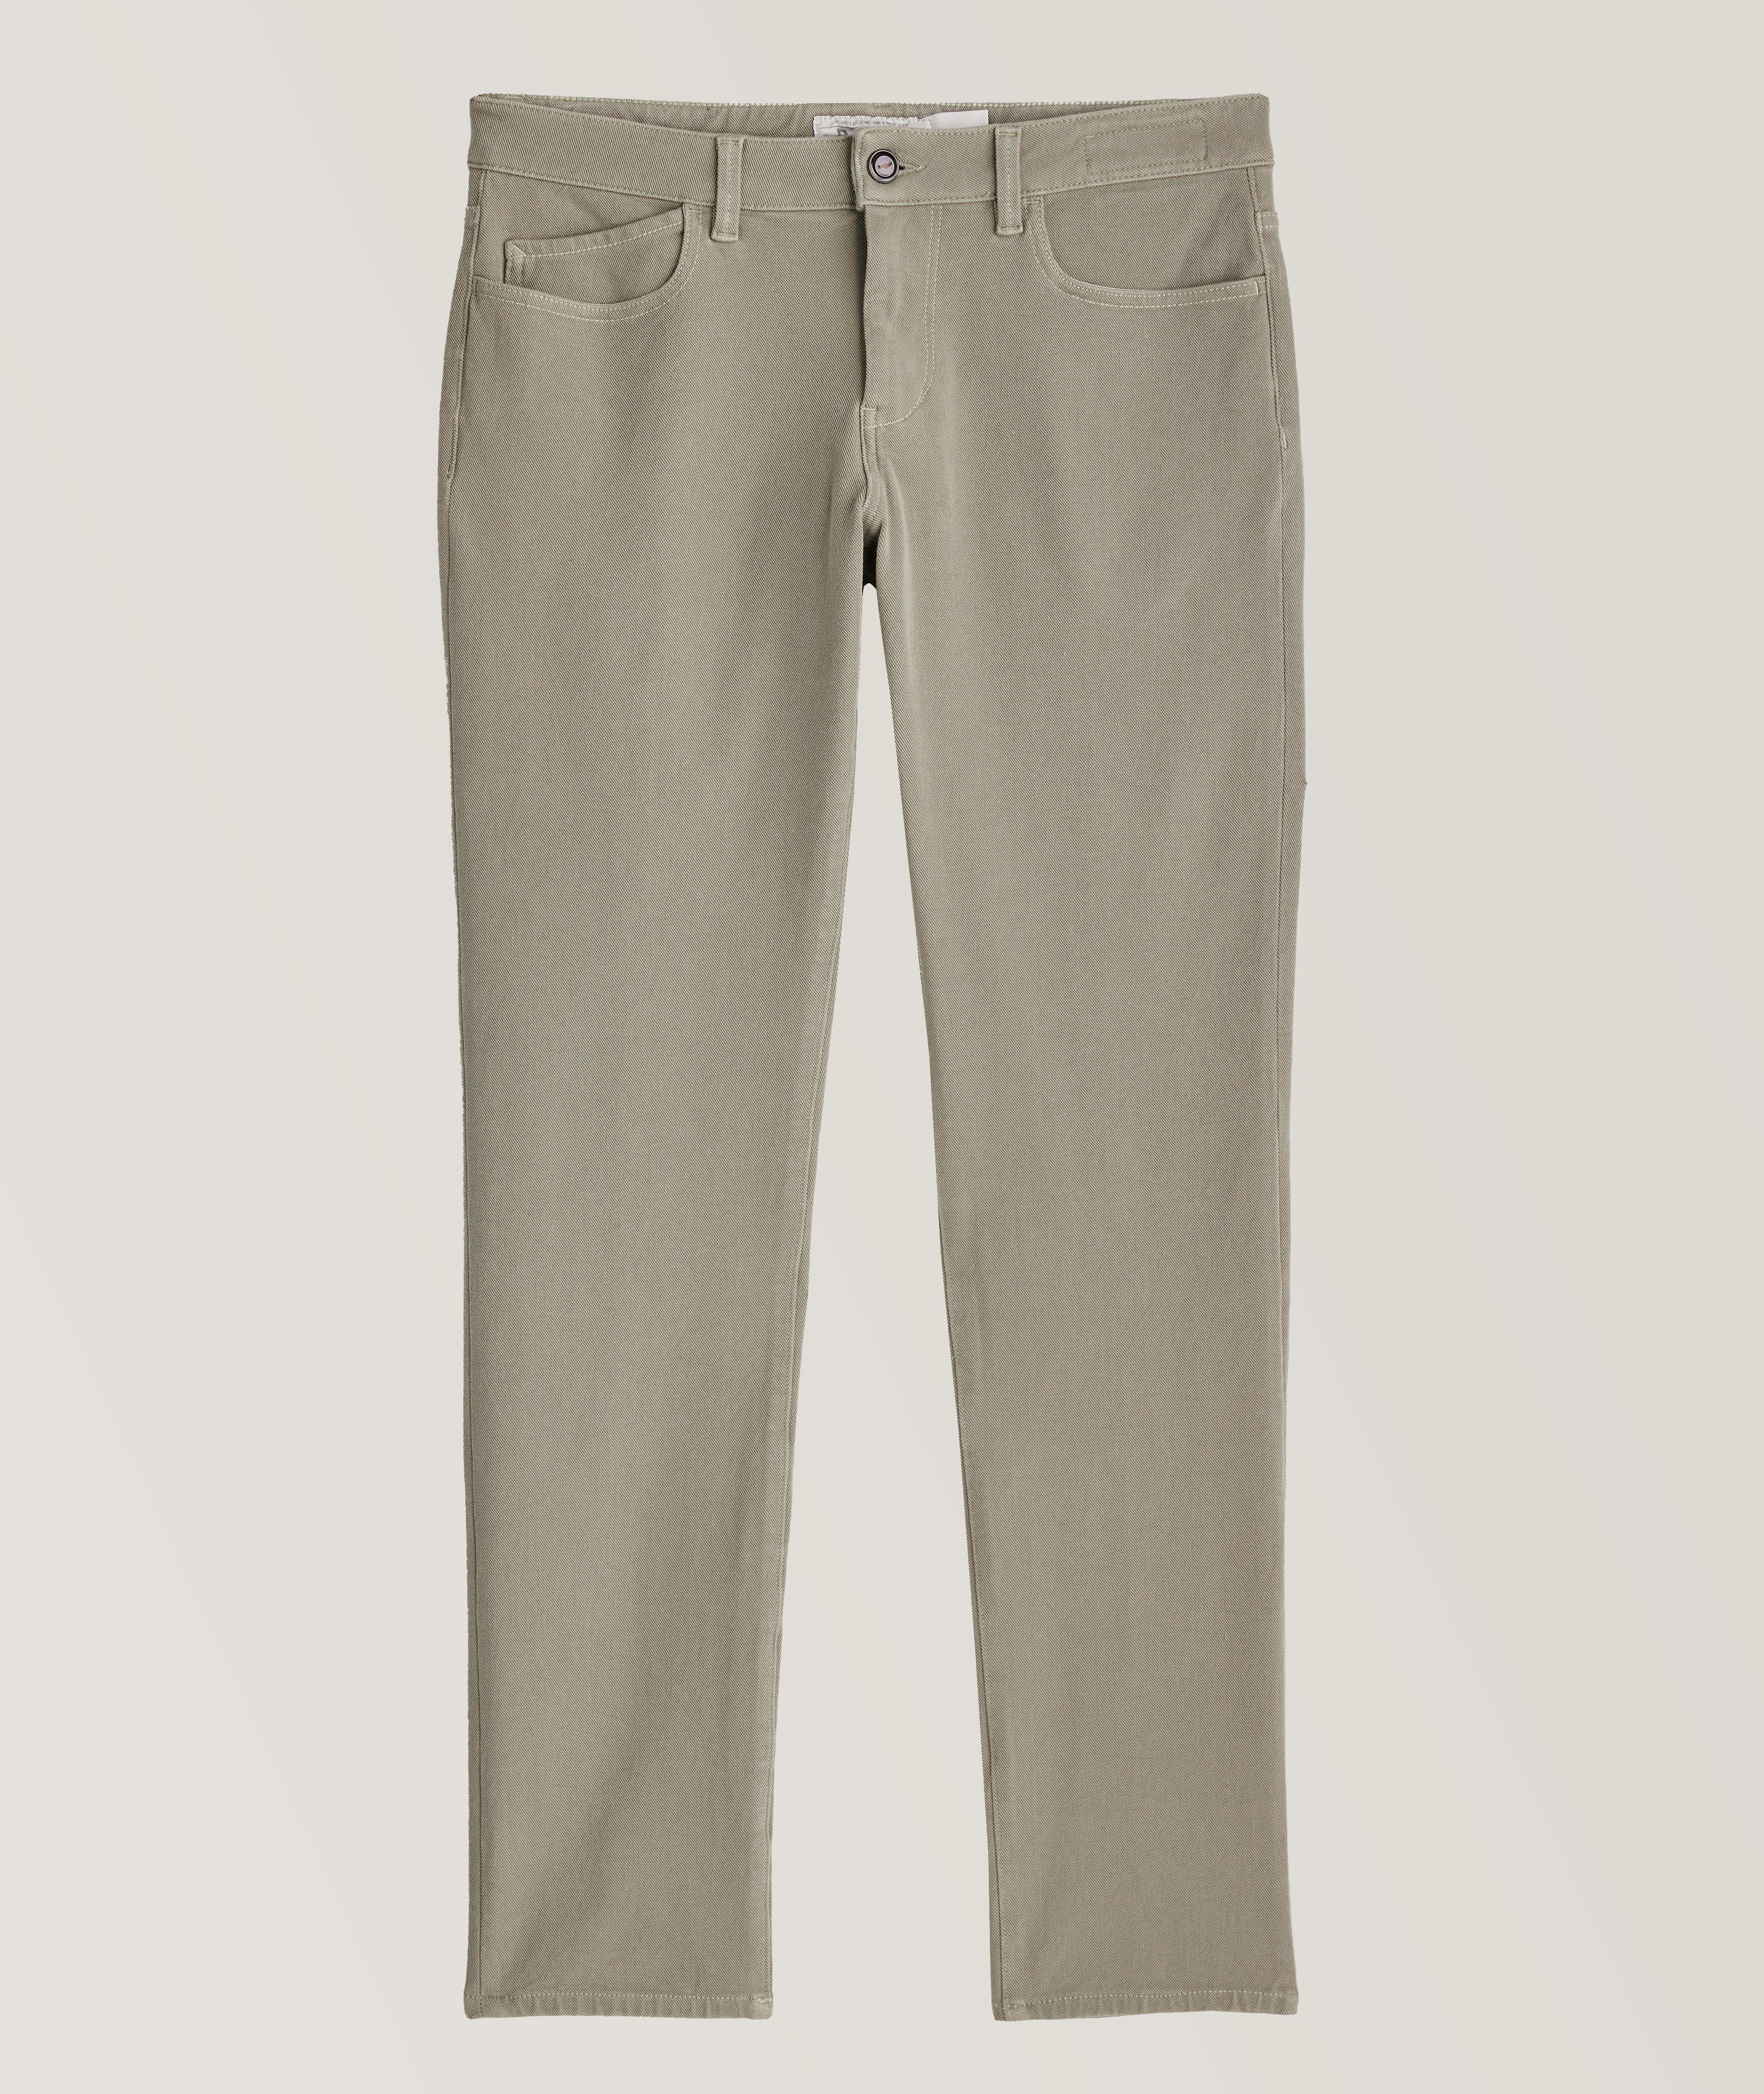 Rubens Sportswear Chic Stretch-Cotton Blend Pants image 0